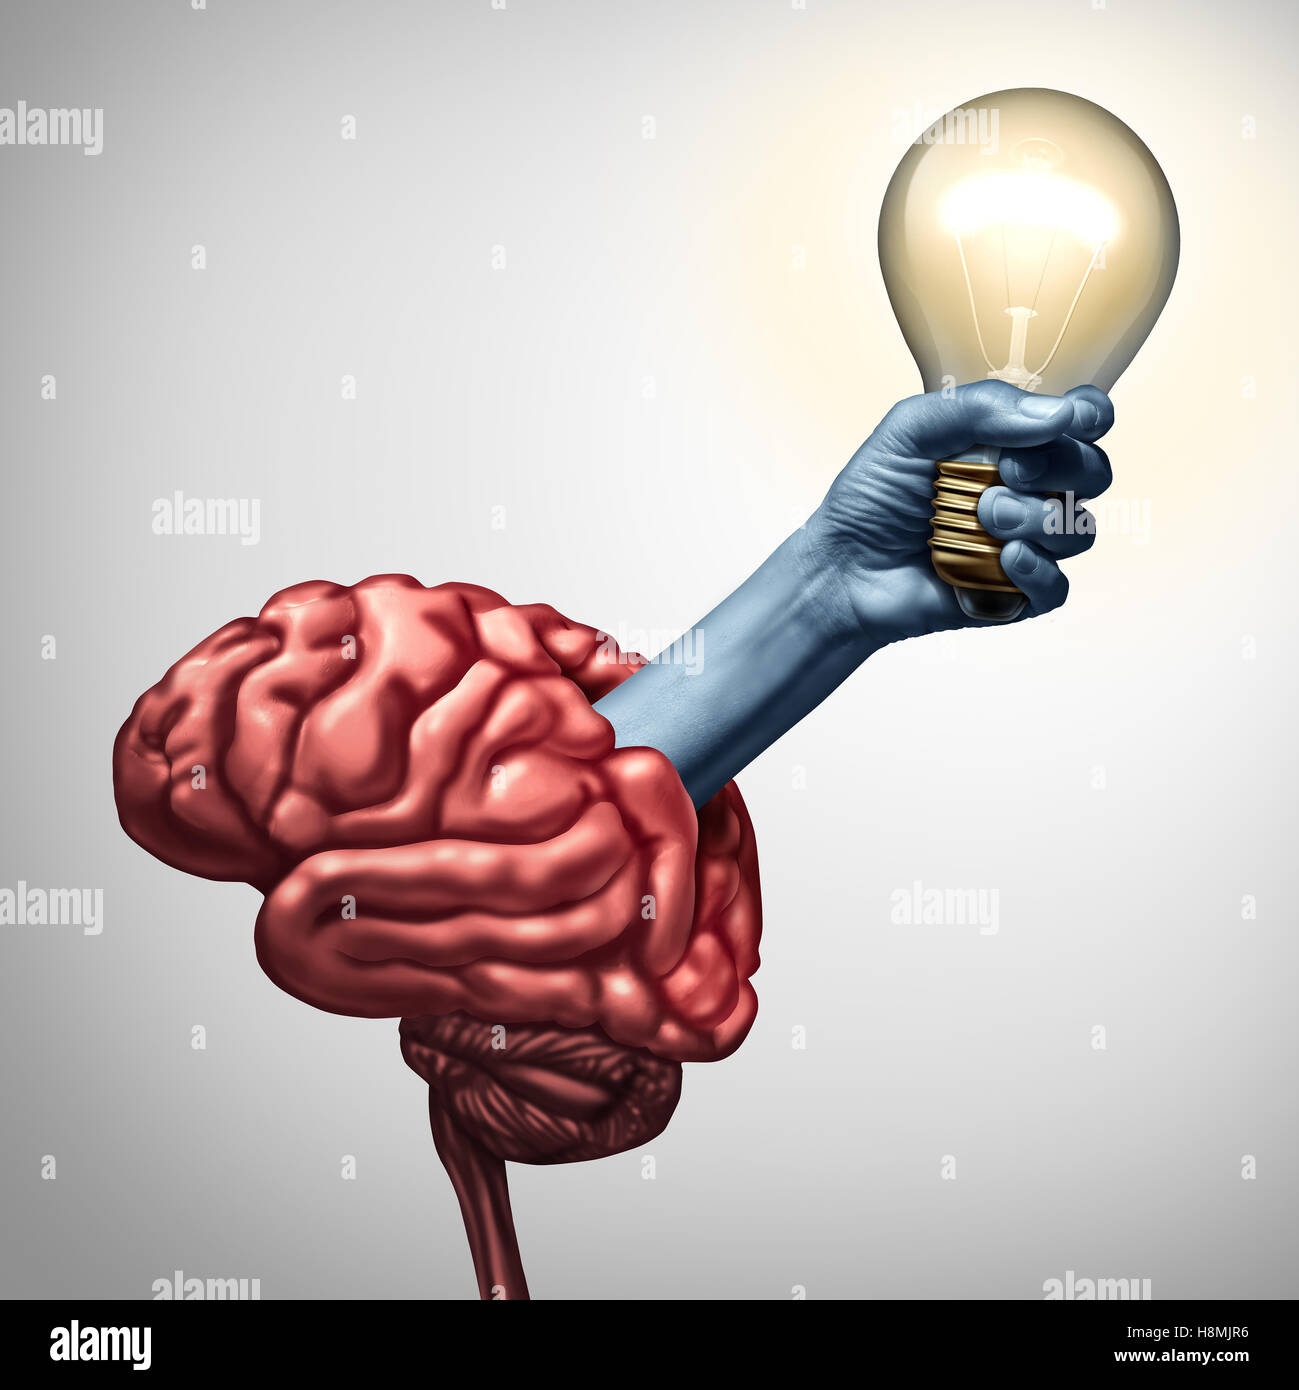 Finden Sie Inspiration Konzept als Arm hält eine leuchtende Glühbirne entstehen aus einem Gehirn als Innovation Metapher für die Macht der Ideen und kreative Inspiration Erfolg mit 3D Abbildung Elemente. Stockfoto